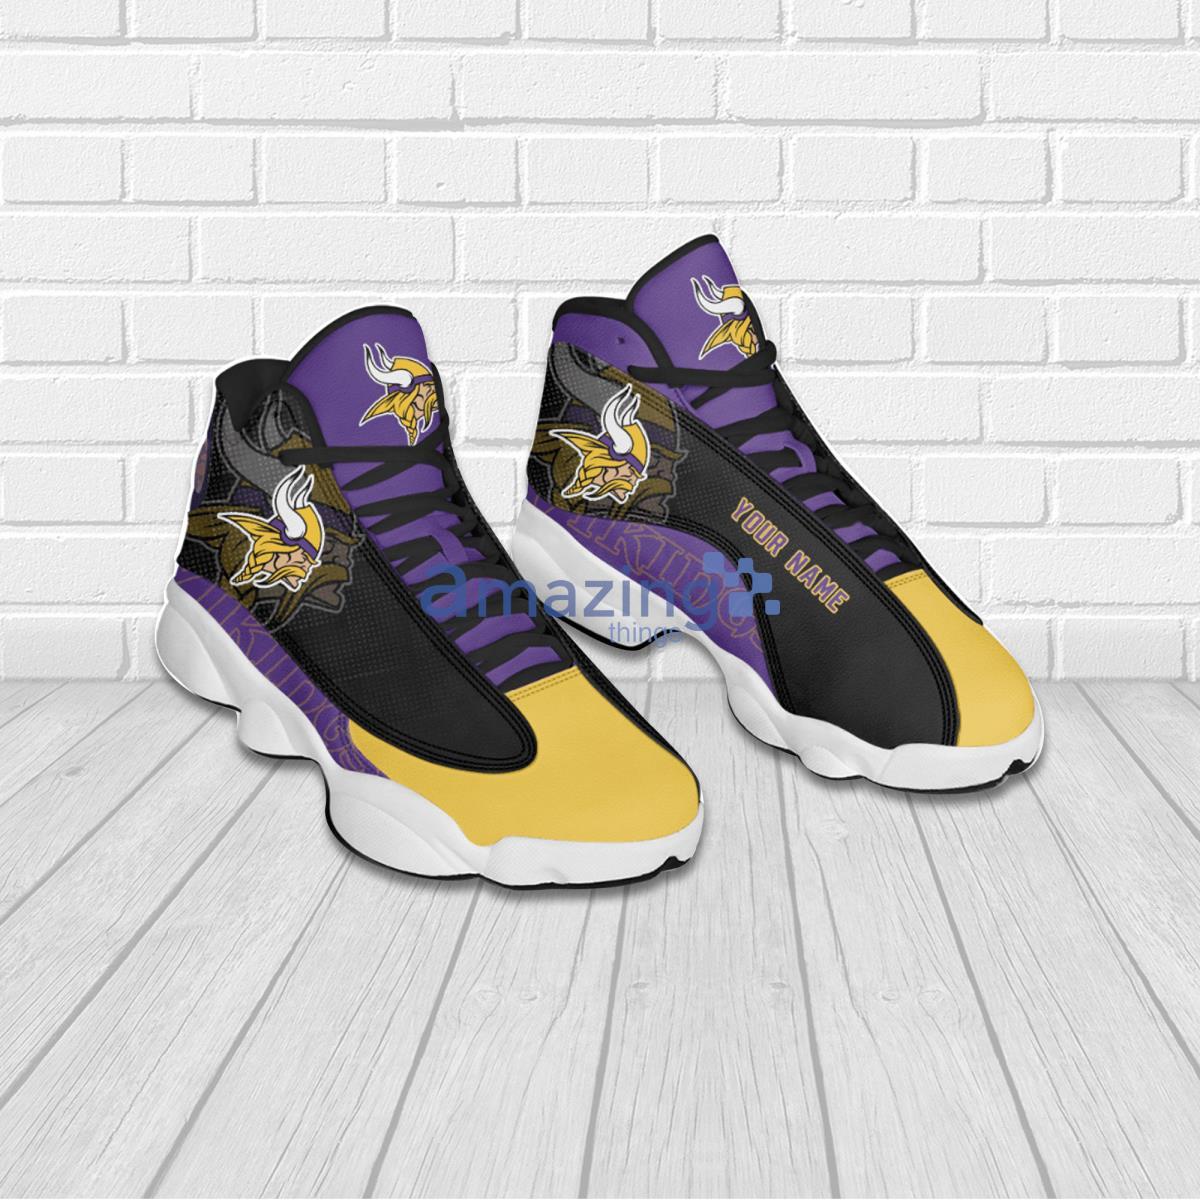 Minnesota Vikings Yellow And Black Air Jordan 13 Sneaker Shoes